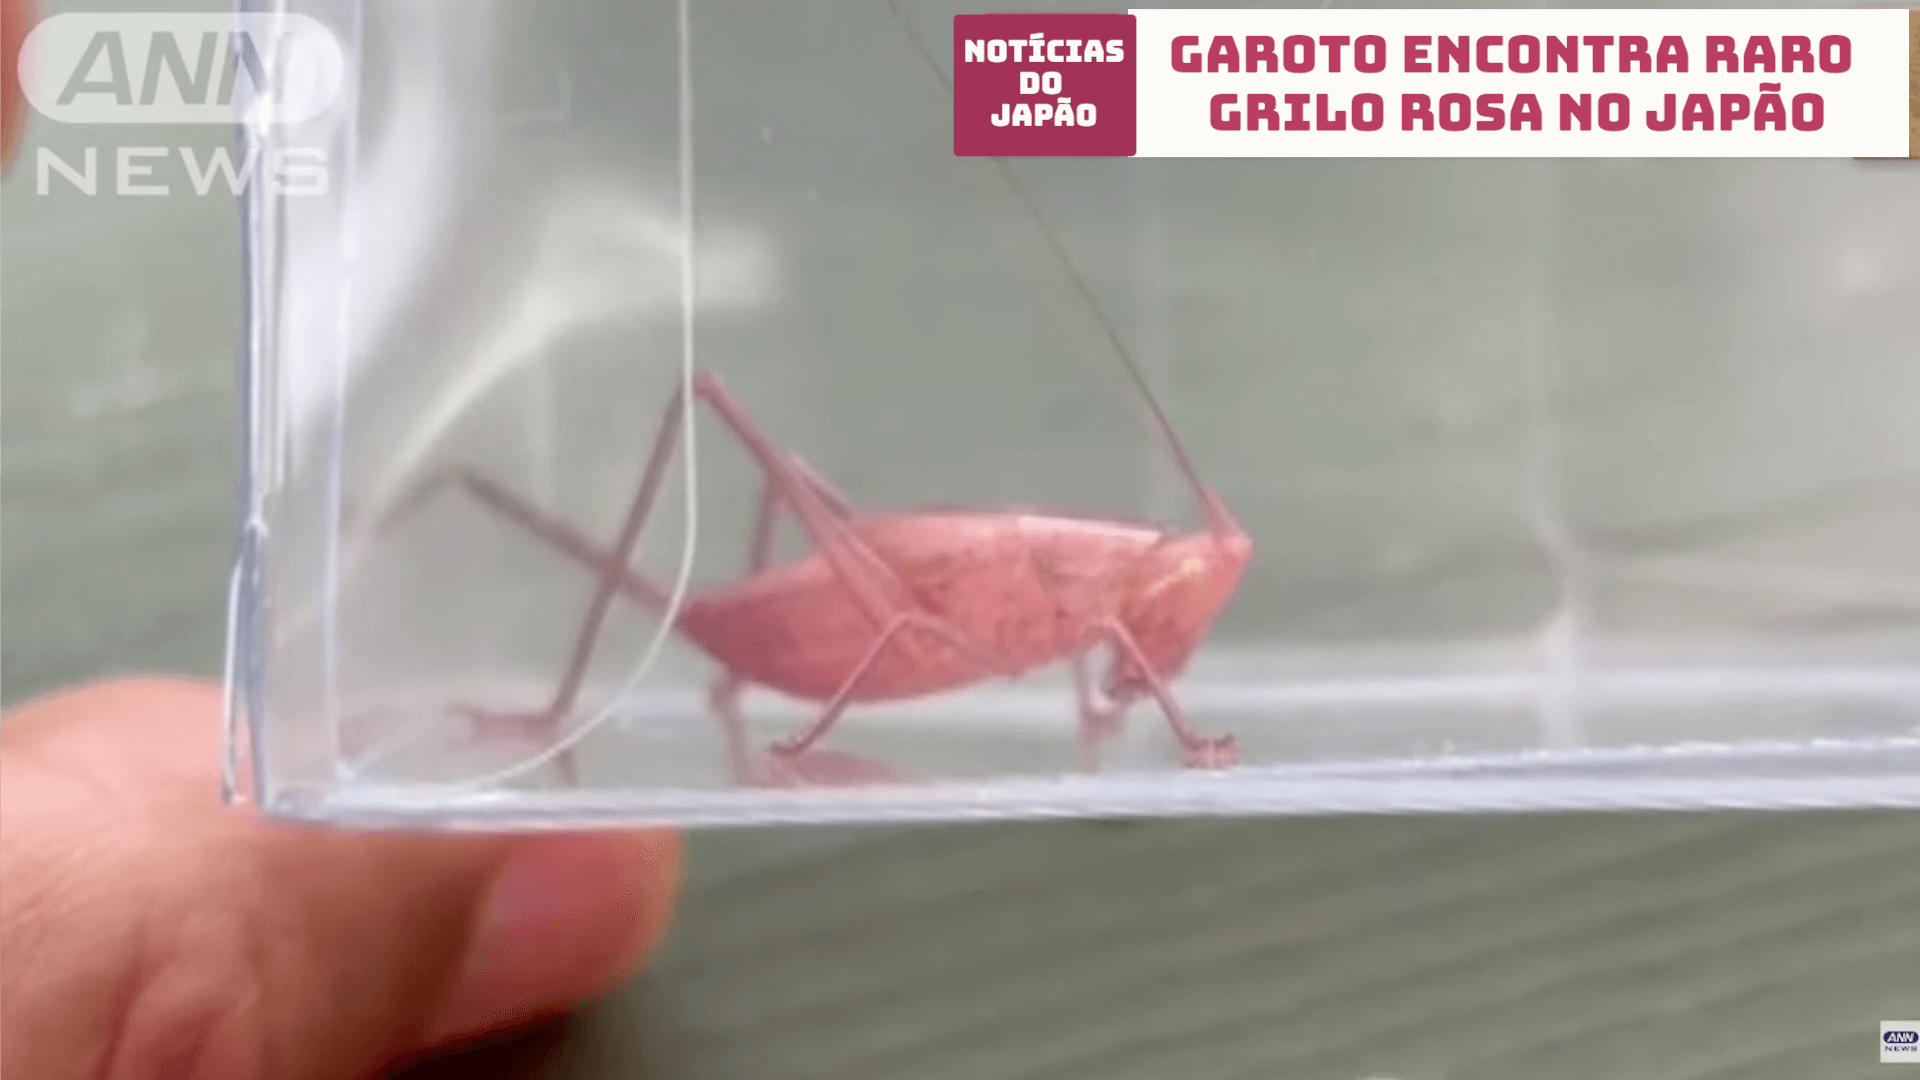 Garoto encontra raro grilo rosa no Japão